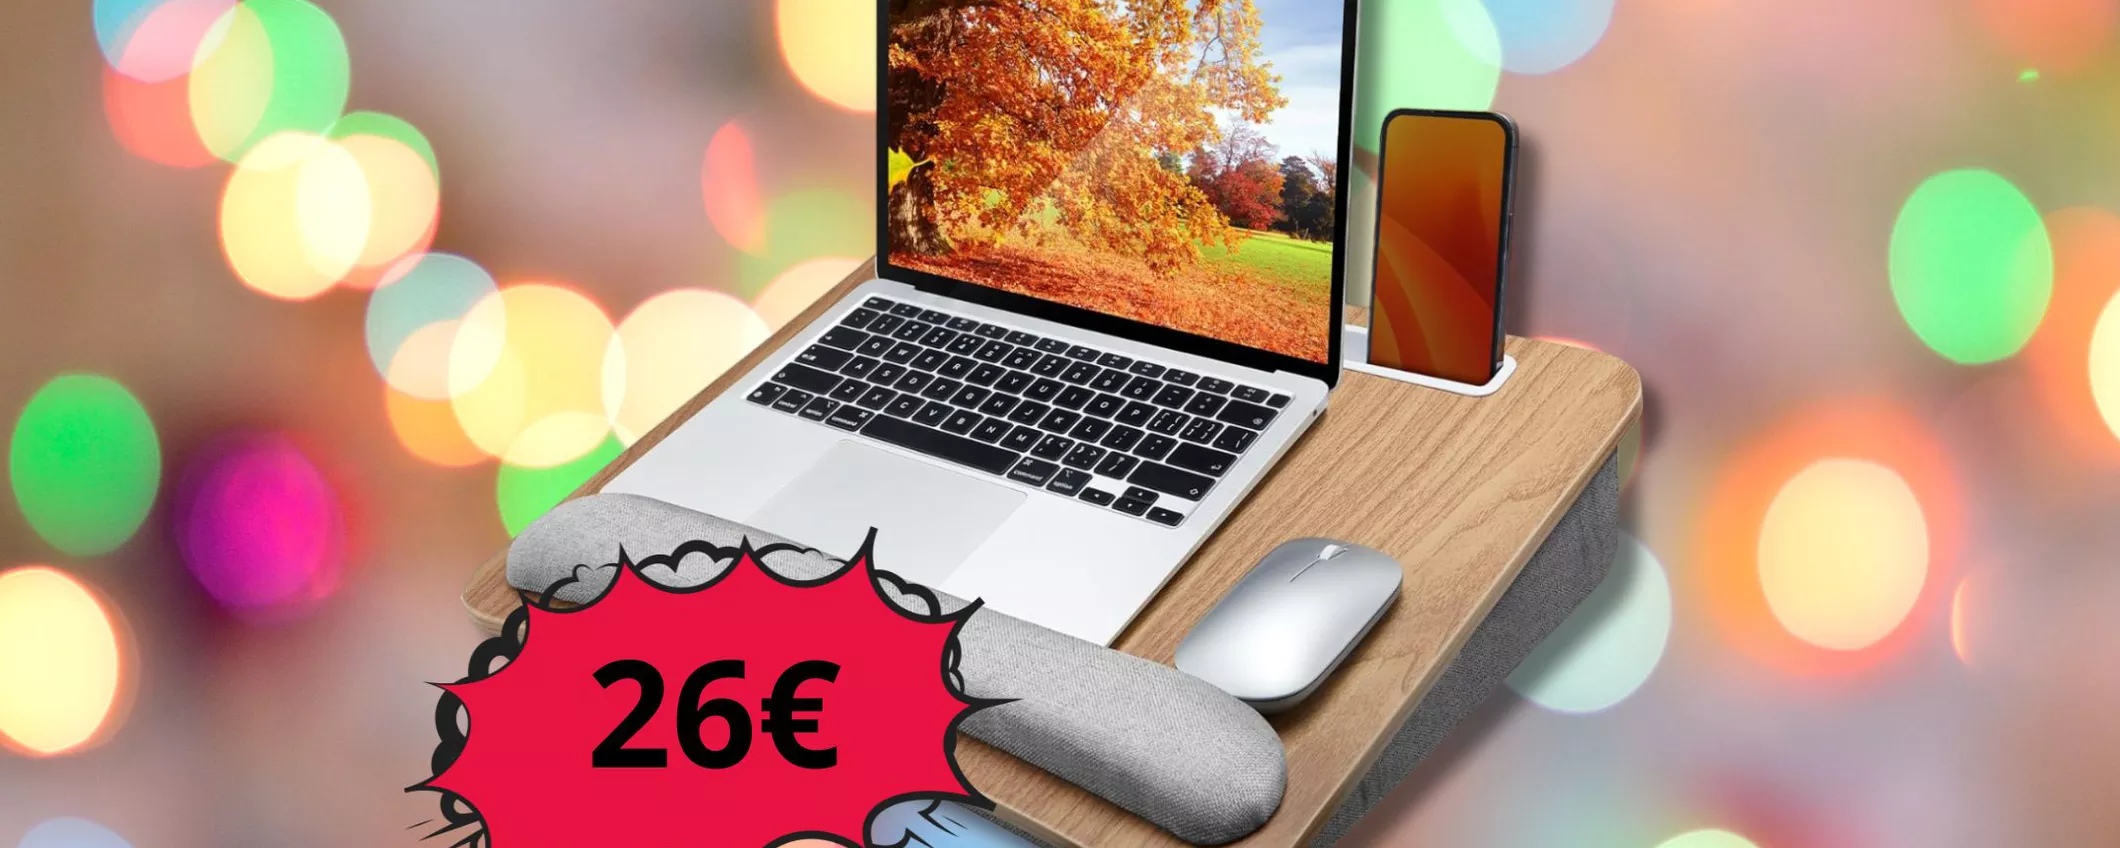 Scrivania portatile per Laptop con cuscino per polsi, antiscivolo e tasca a soli 26 euro: lavora dove vuoi con comodità!